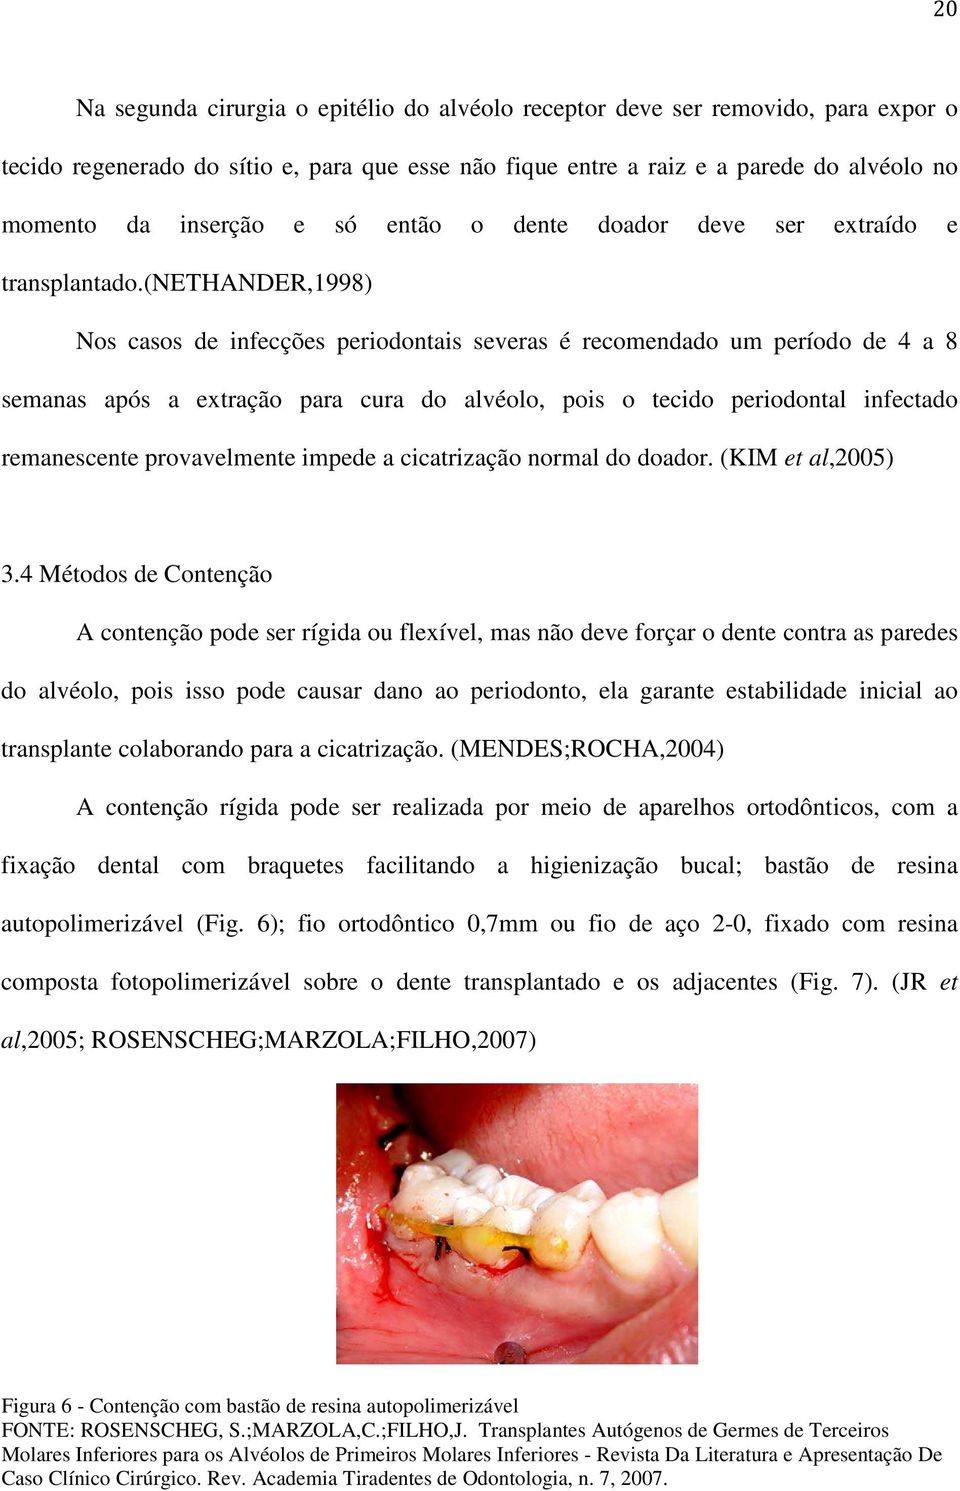 (nethander,1998) Nos casos de infecções periodontais severas é recomendado um período de 4 a 8 semanas após a extração para cura do alvéolo, pois o tecido periodontal infectado remanescente